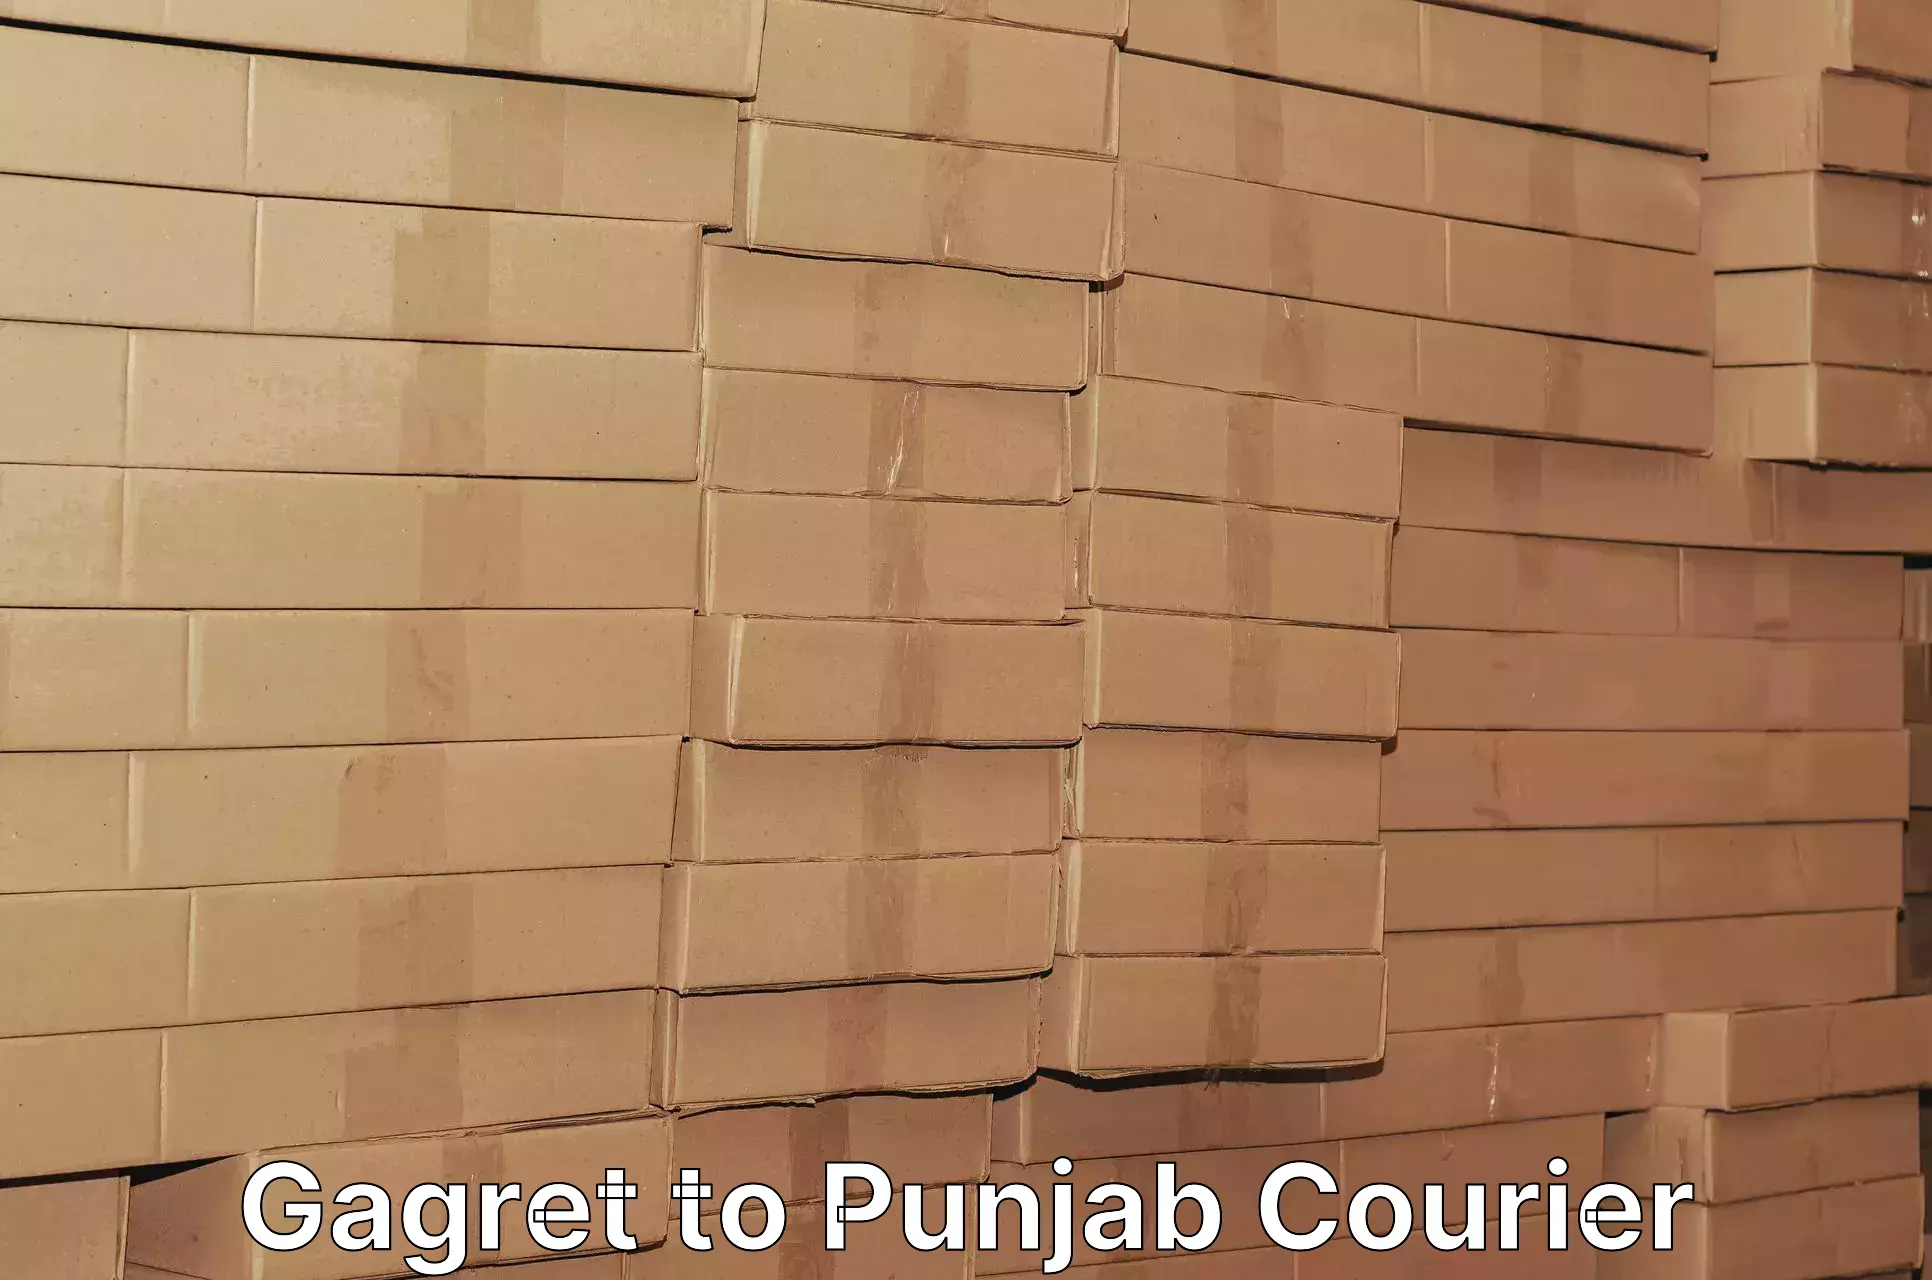 Expedited shipping methods Gagret to Punjab